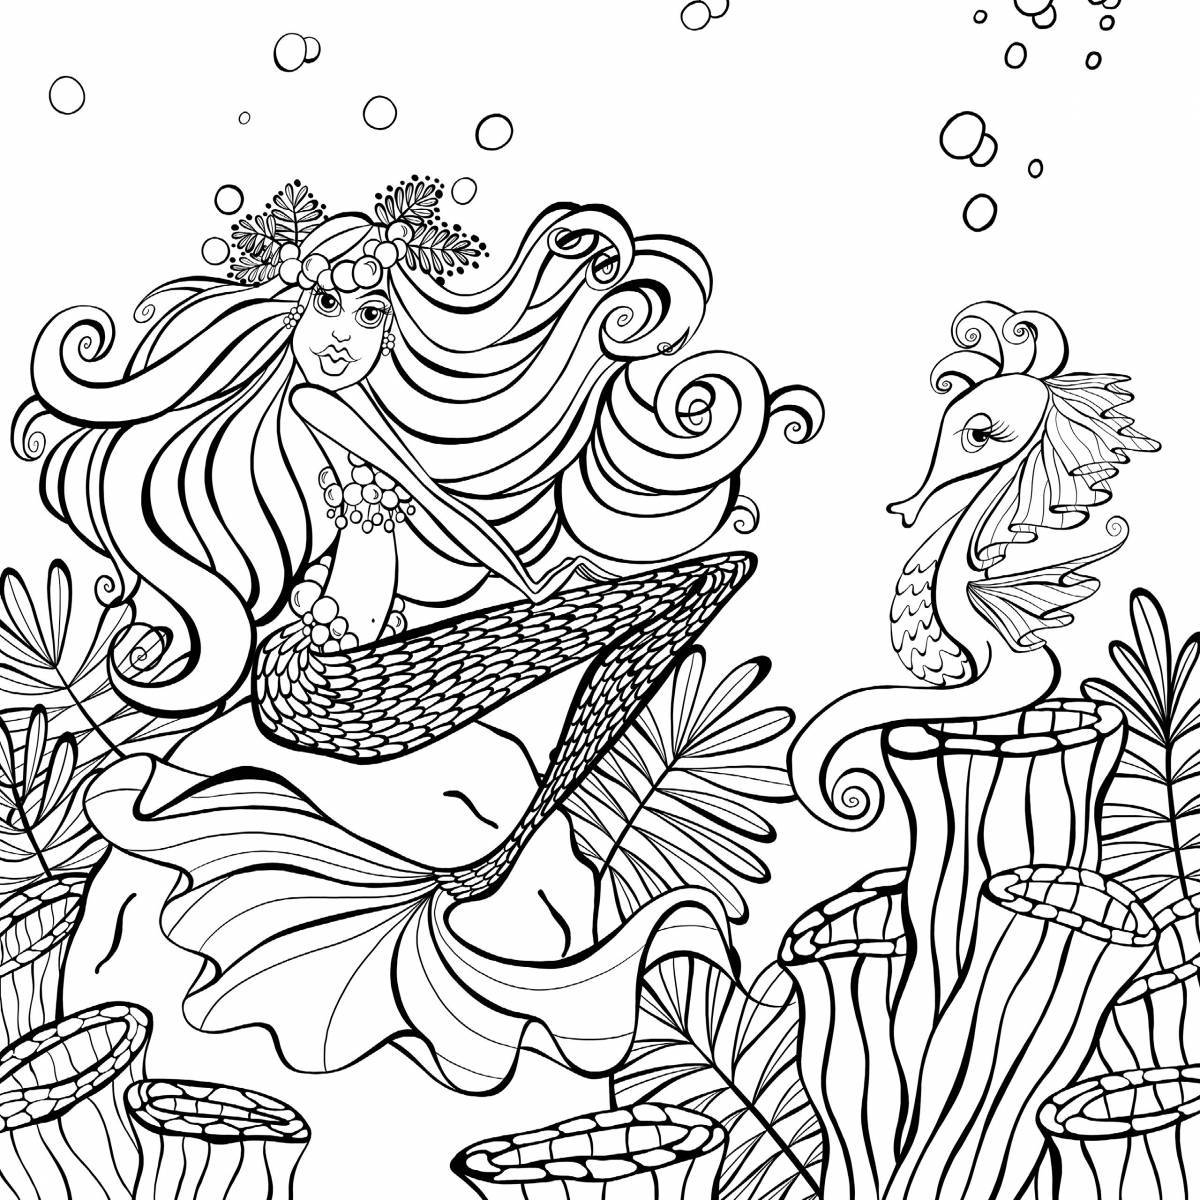 Elegant mermaid coloring book